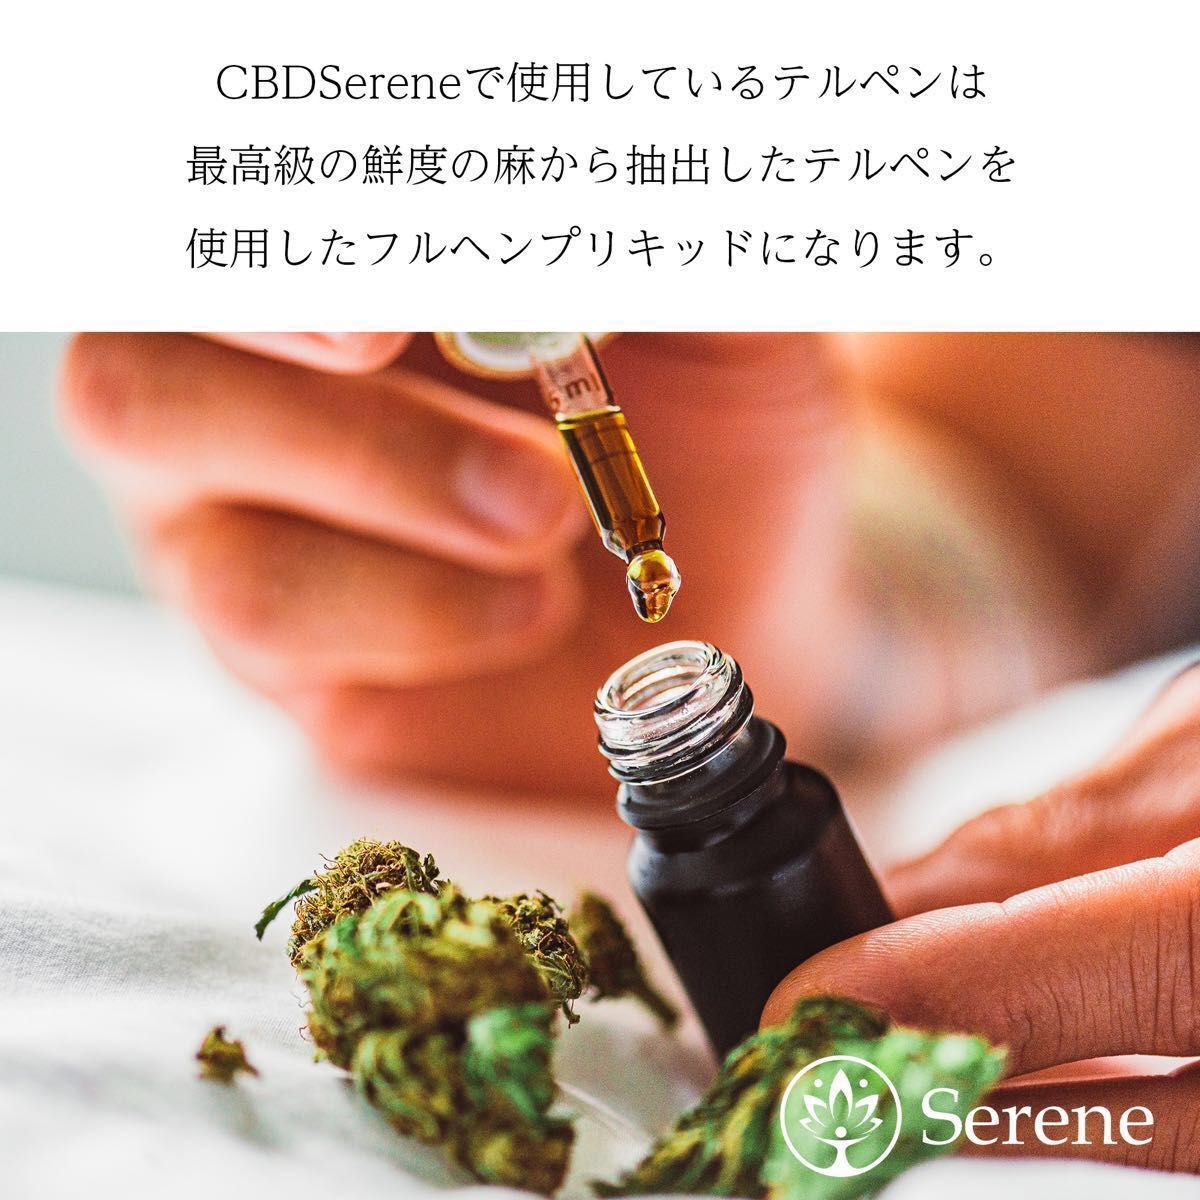 良好品】 CRDP35% 0.5ml 高濃度リキッド 高級麻由来濃縮テルペン配合